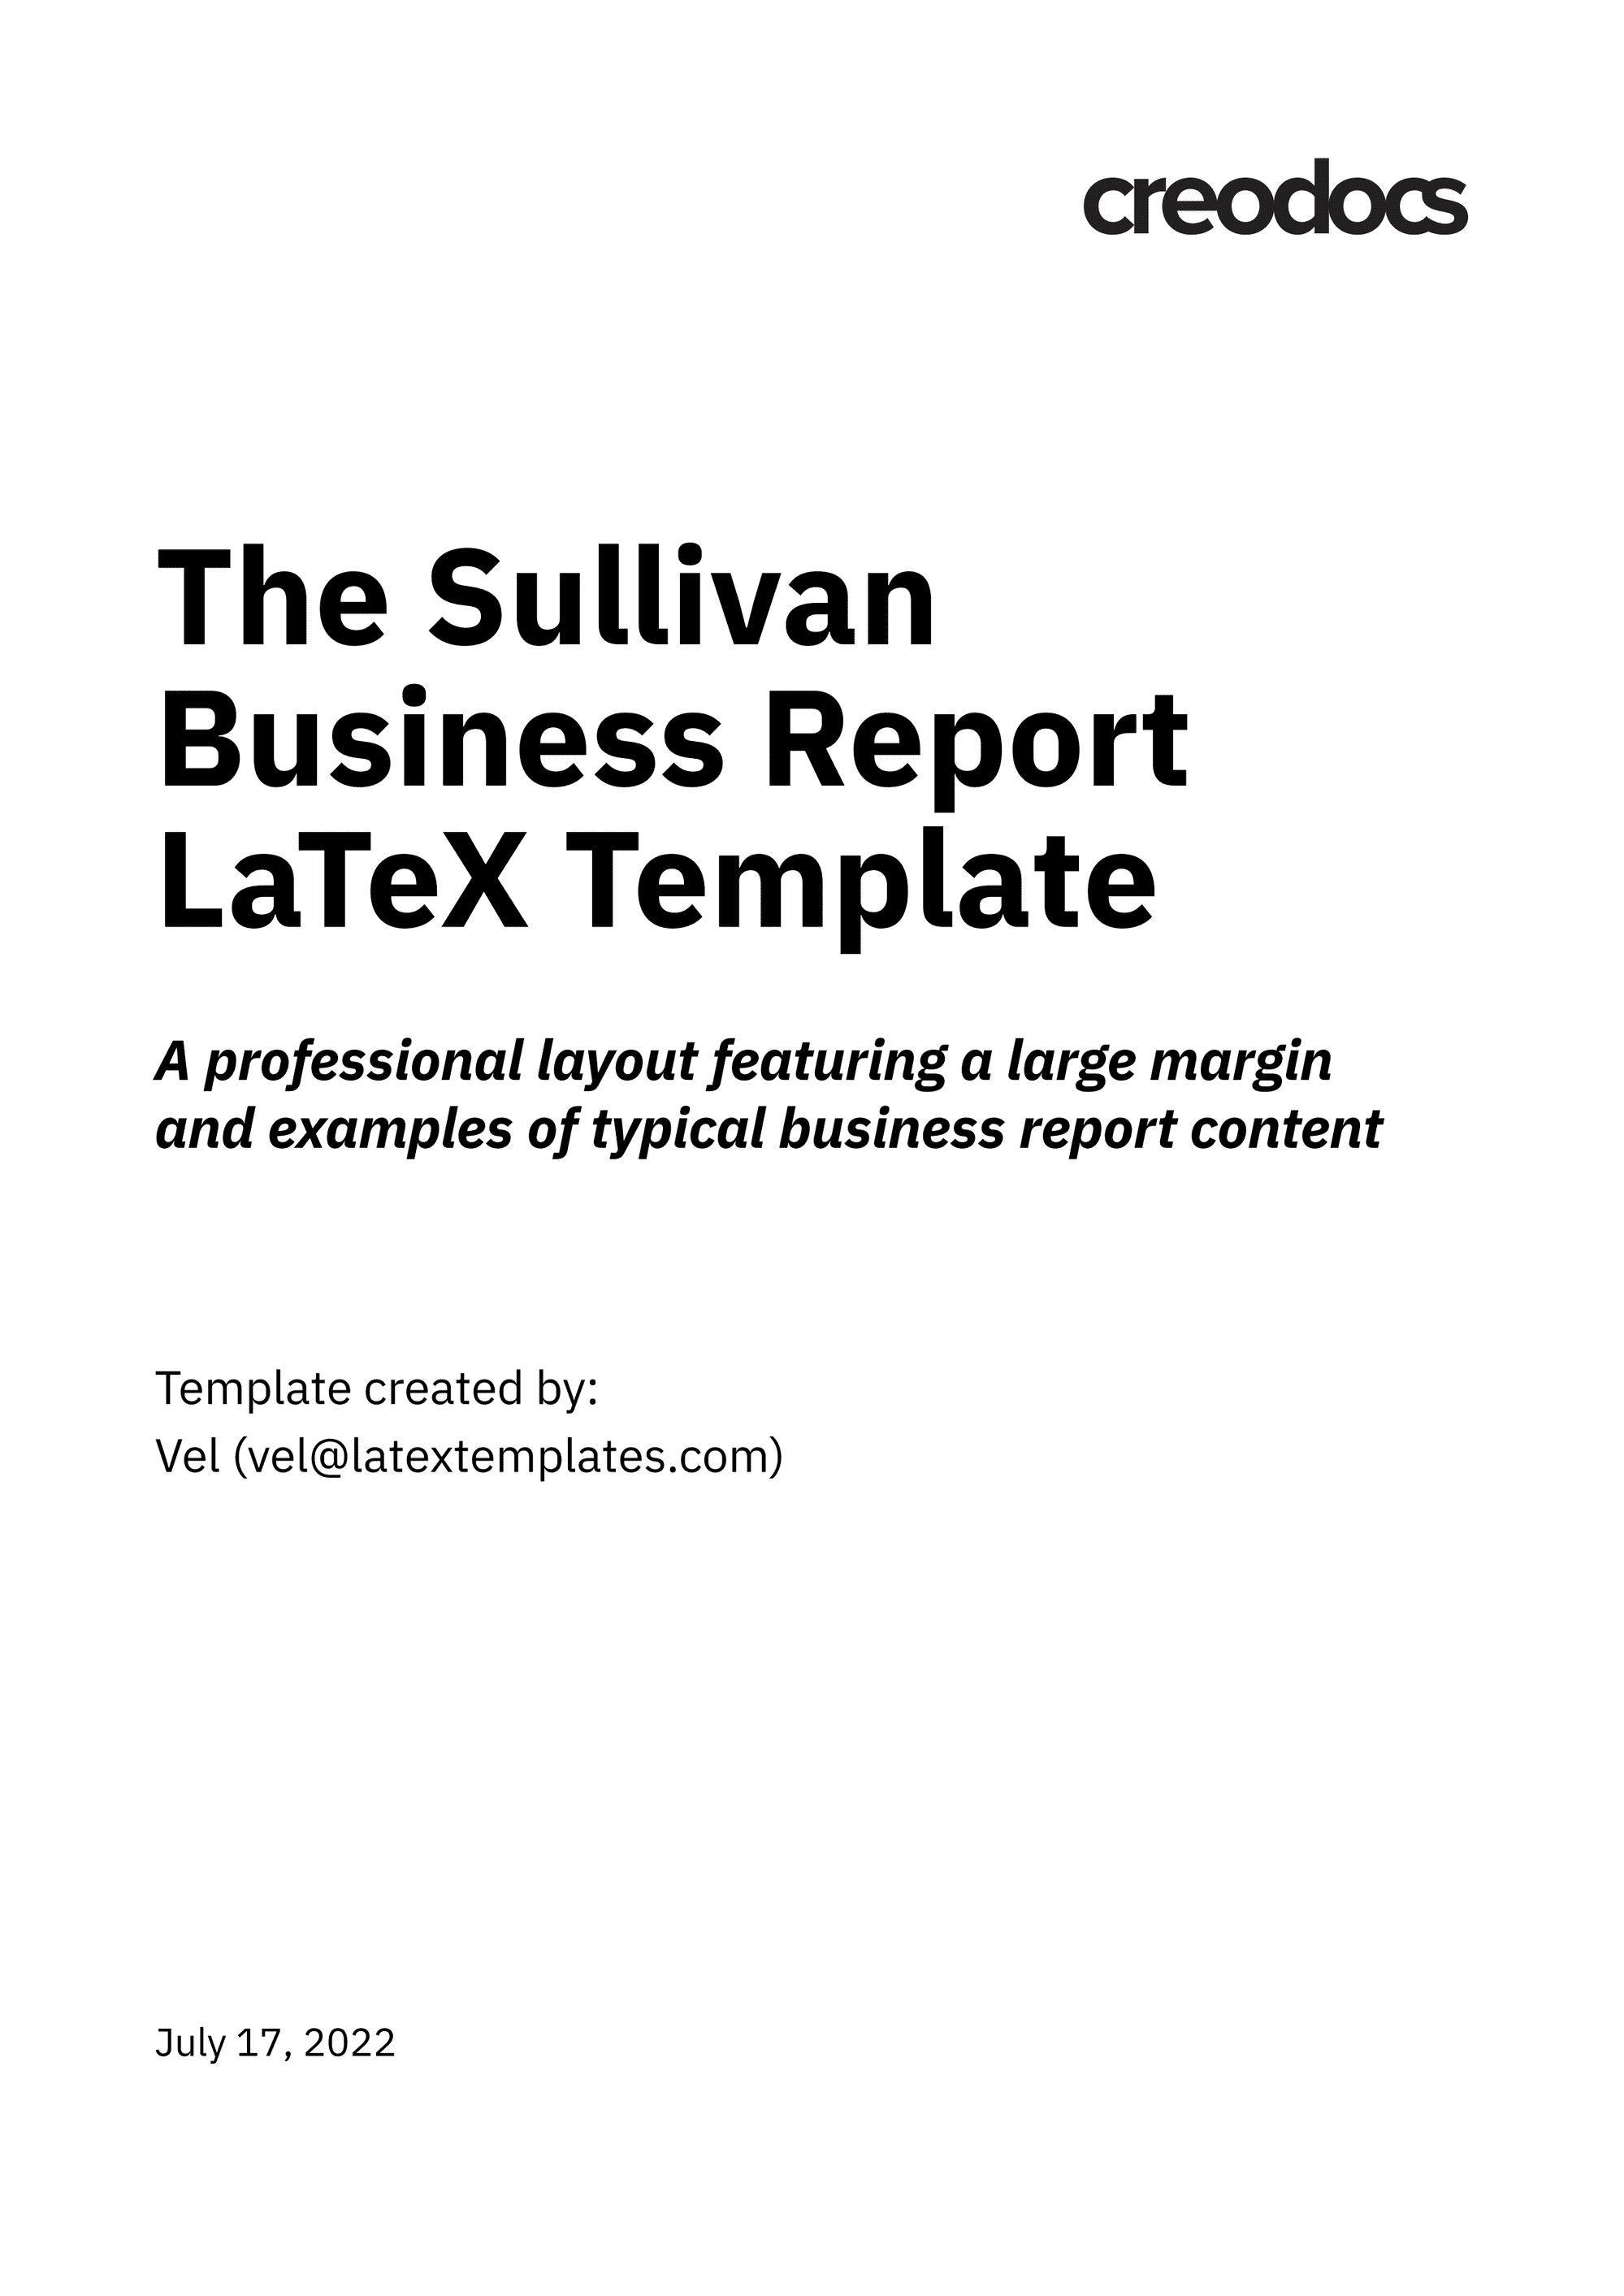 一个 LaTeX 的商业报告模板